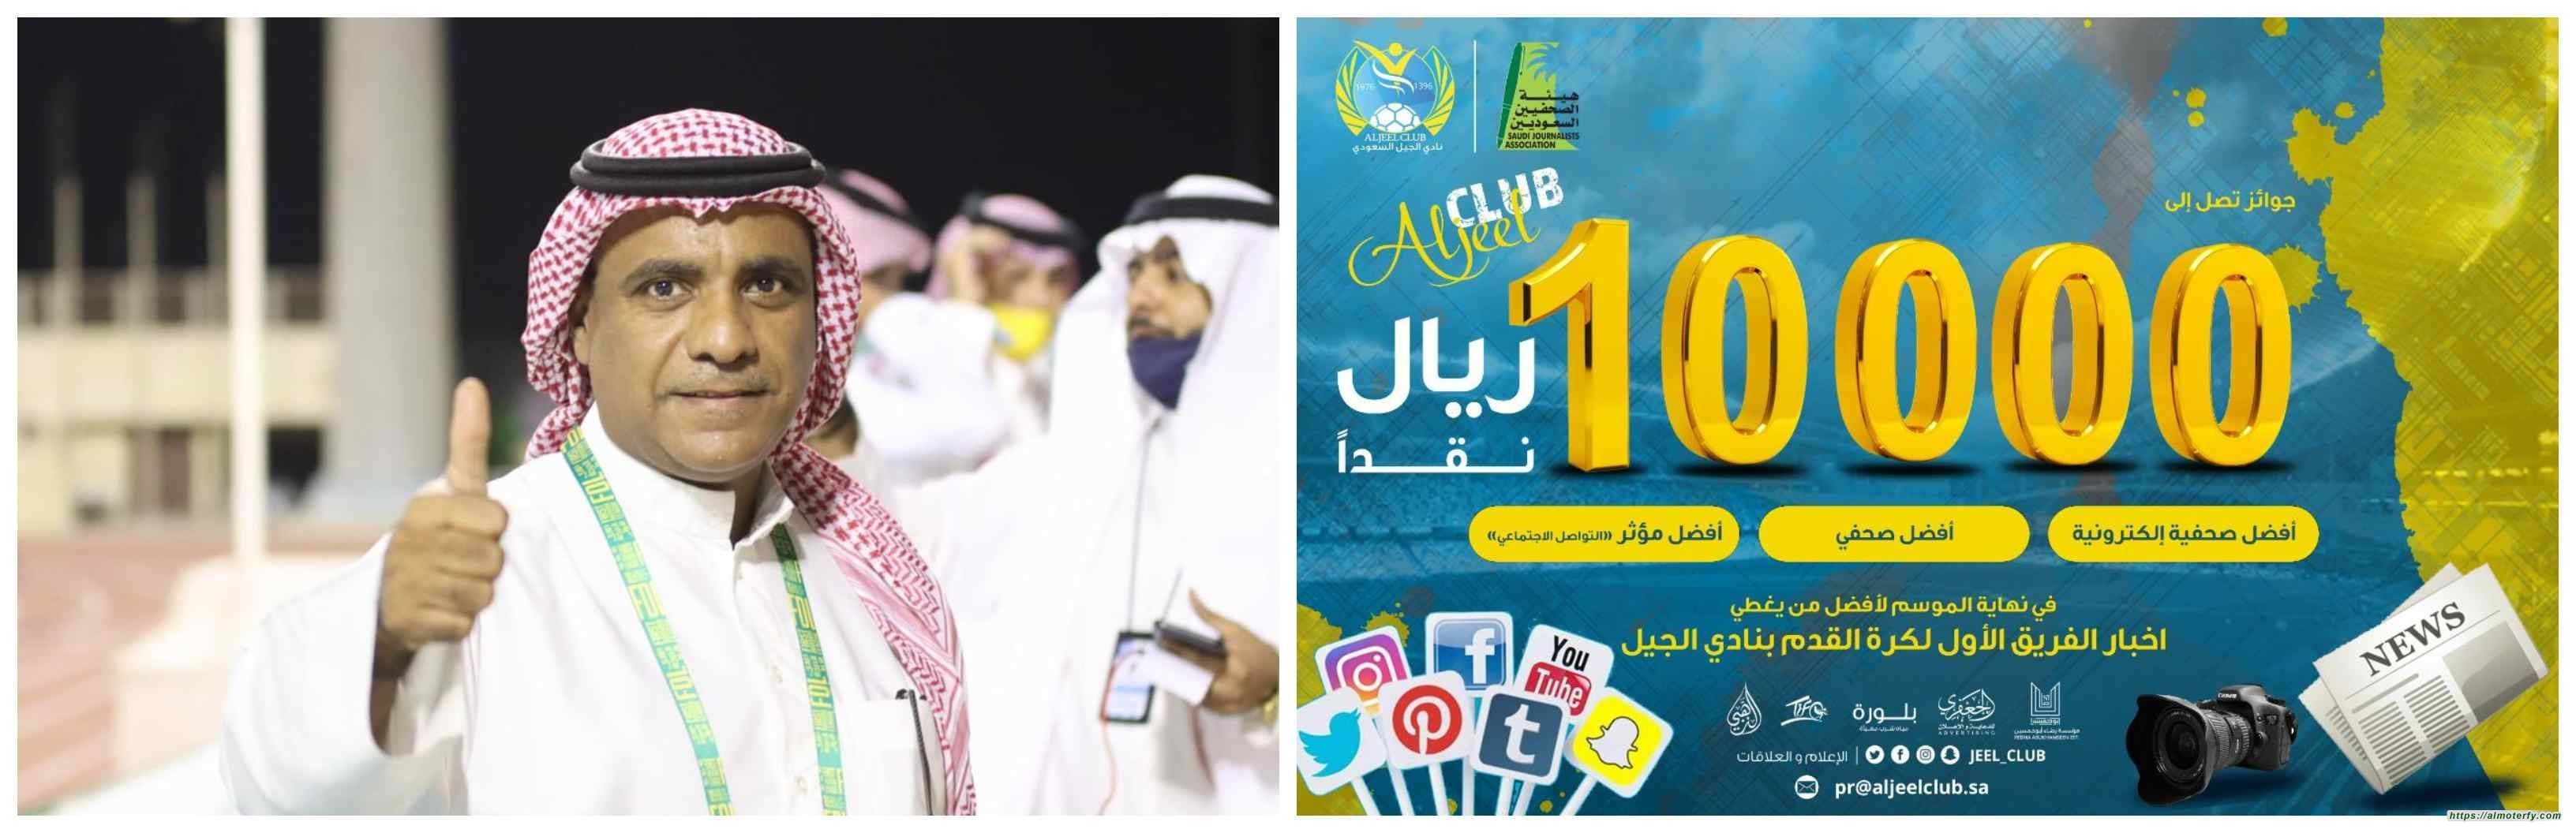 بالتعاون بين نادي الجيل وهيئة الصحفيين السعوديين بالأحساء الجيل يطلق جائزة اعلامية رياضية بقيمة عشرة الاف ريال نقداً